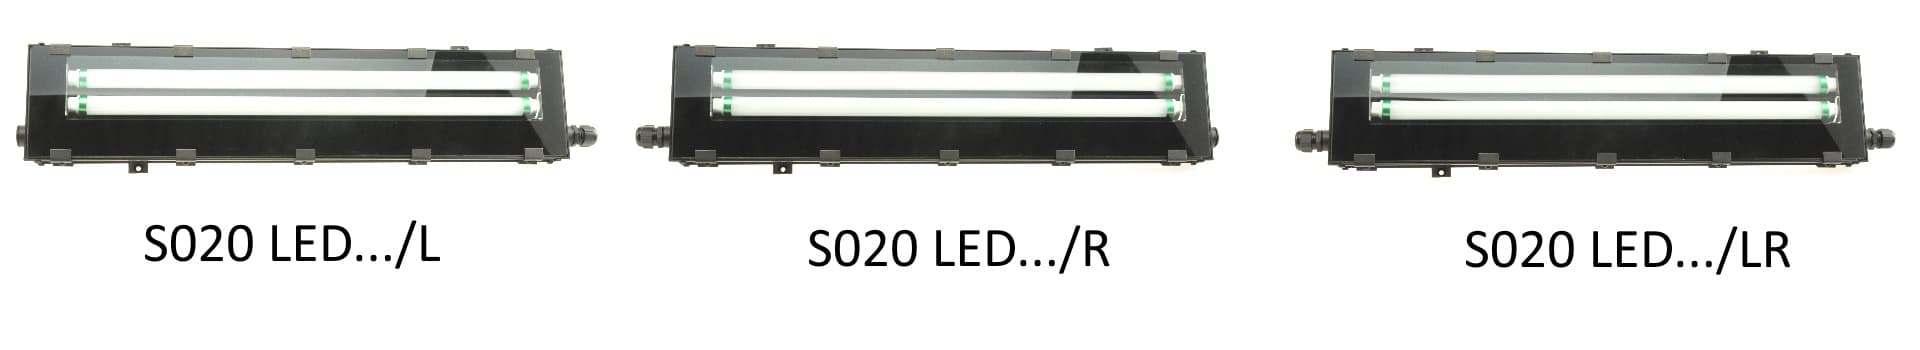 S020 LED light outlet variants